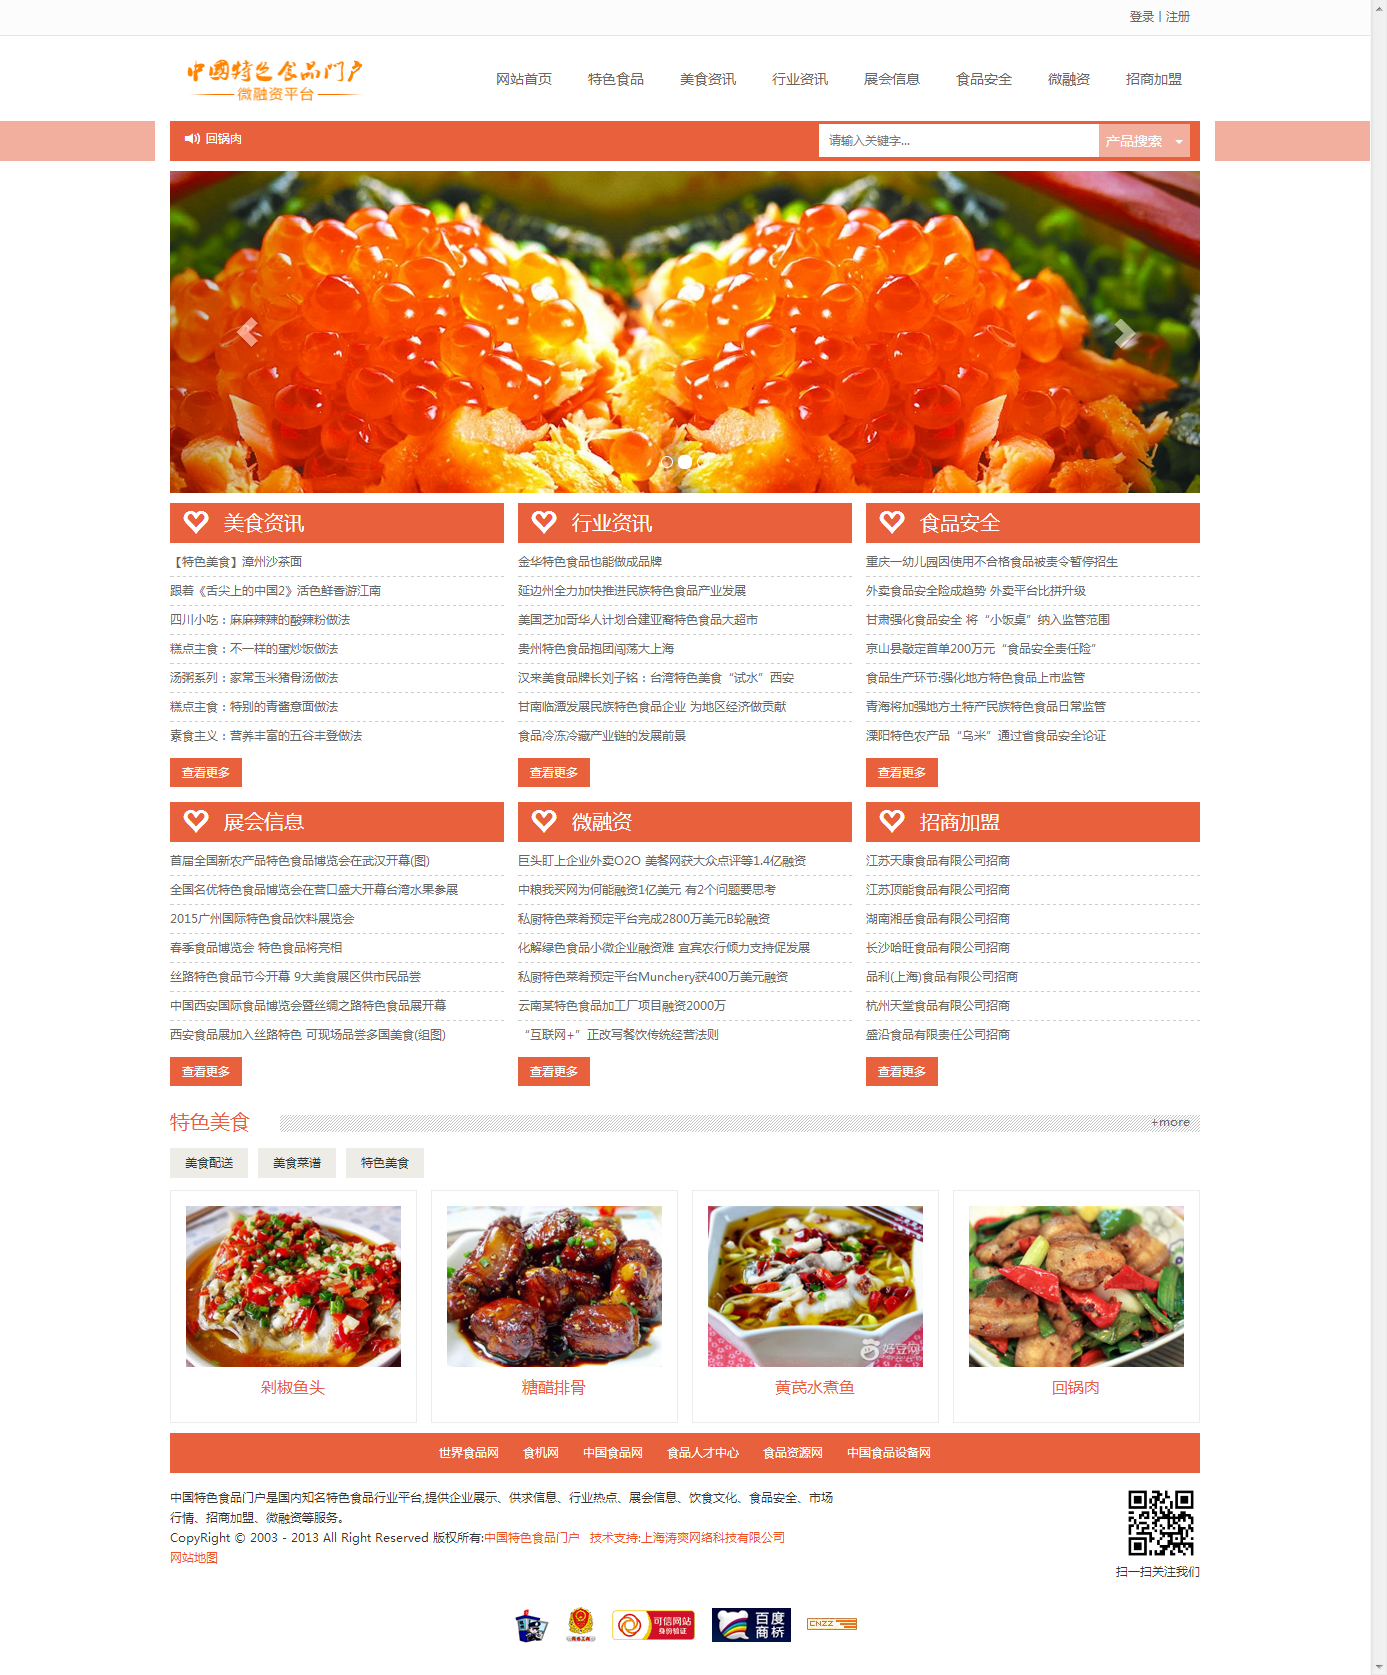 中国特色食品门户-微融资平台.png